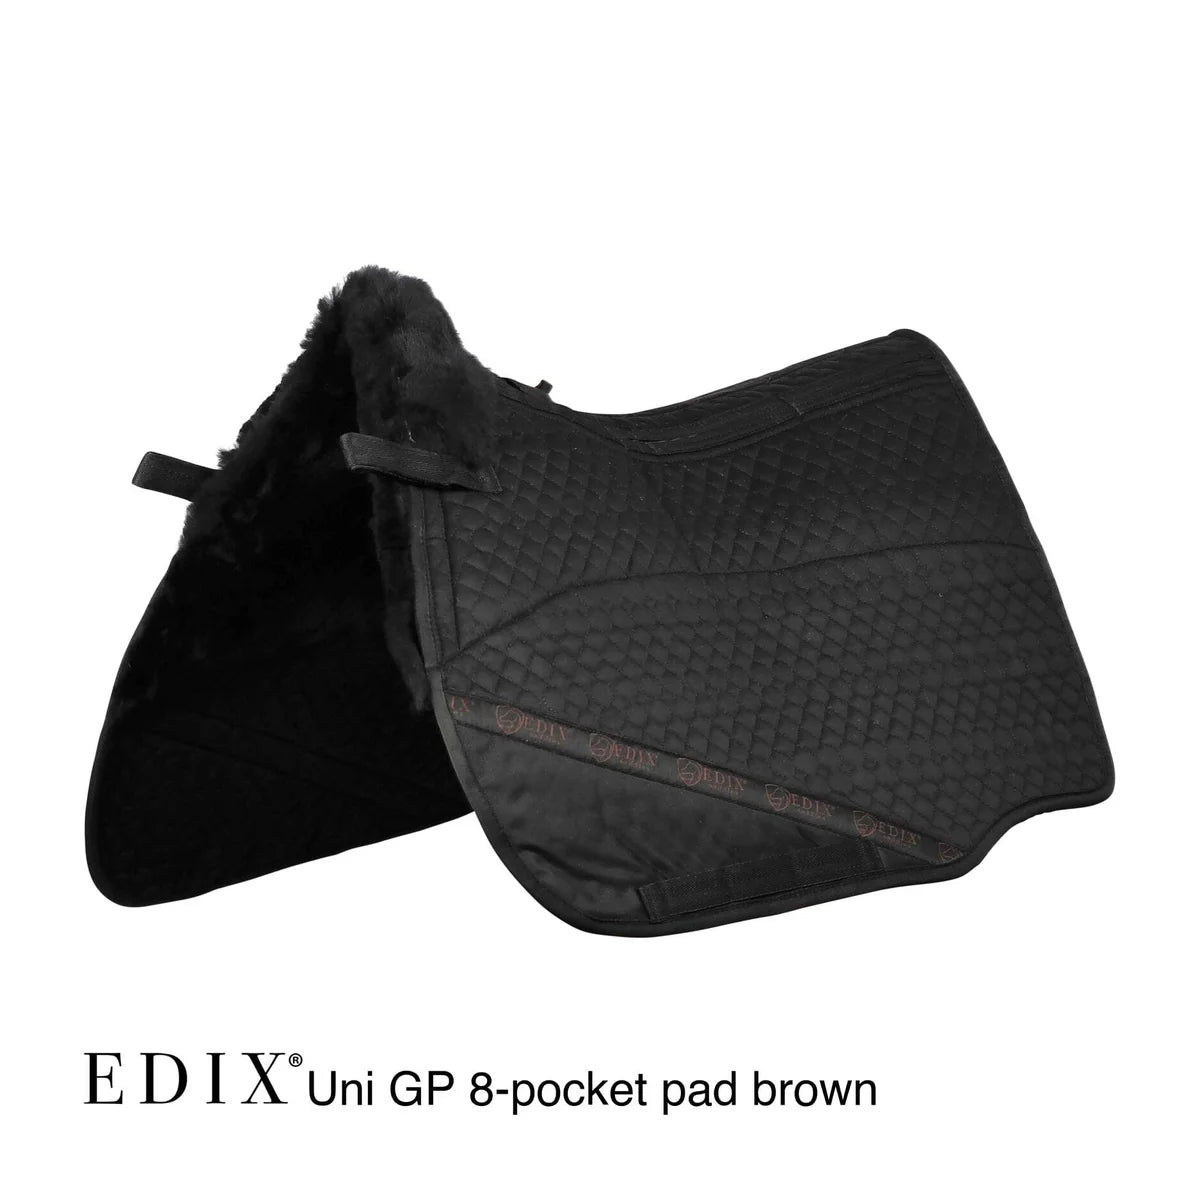 Edix Merino 8-Pocket GP Pad